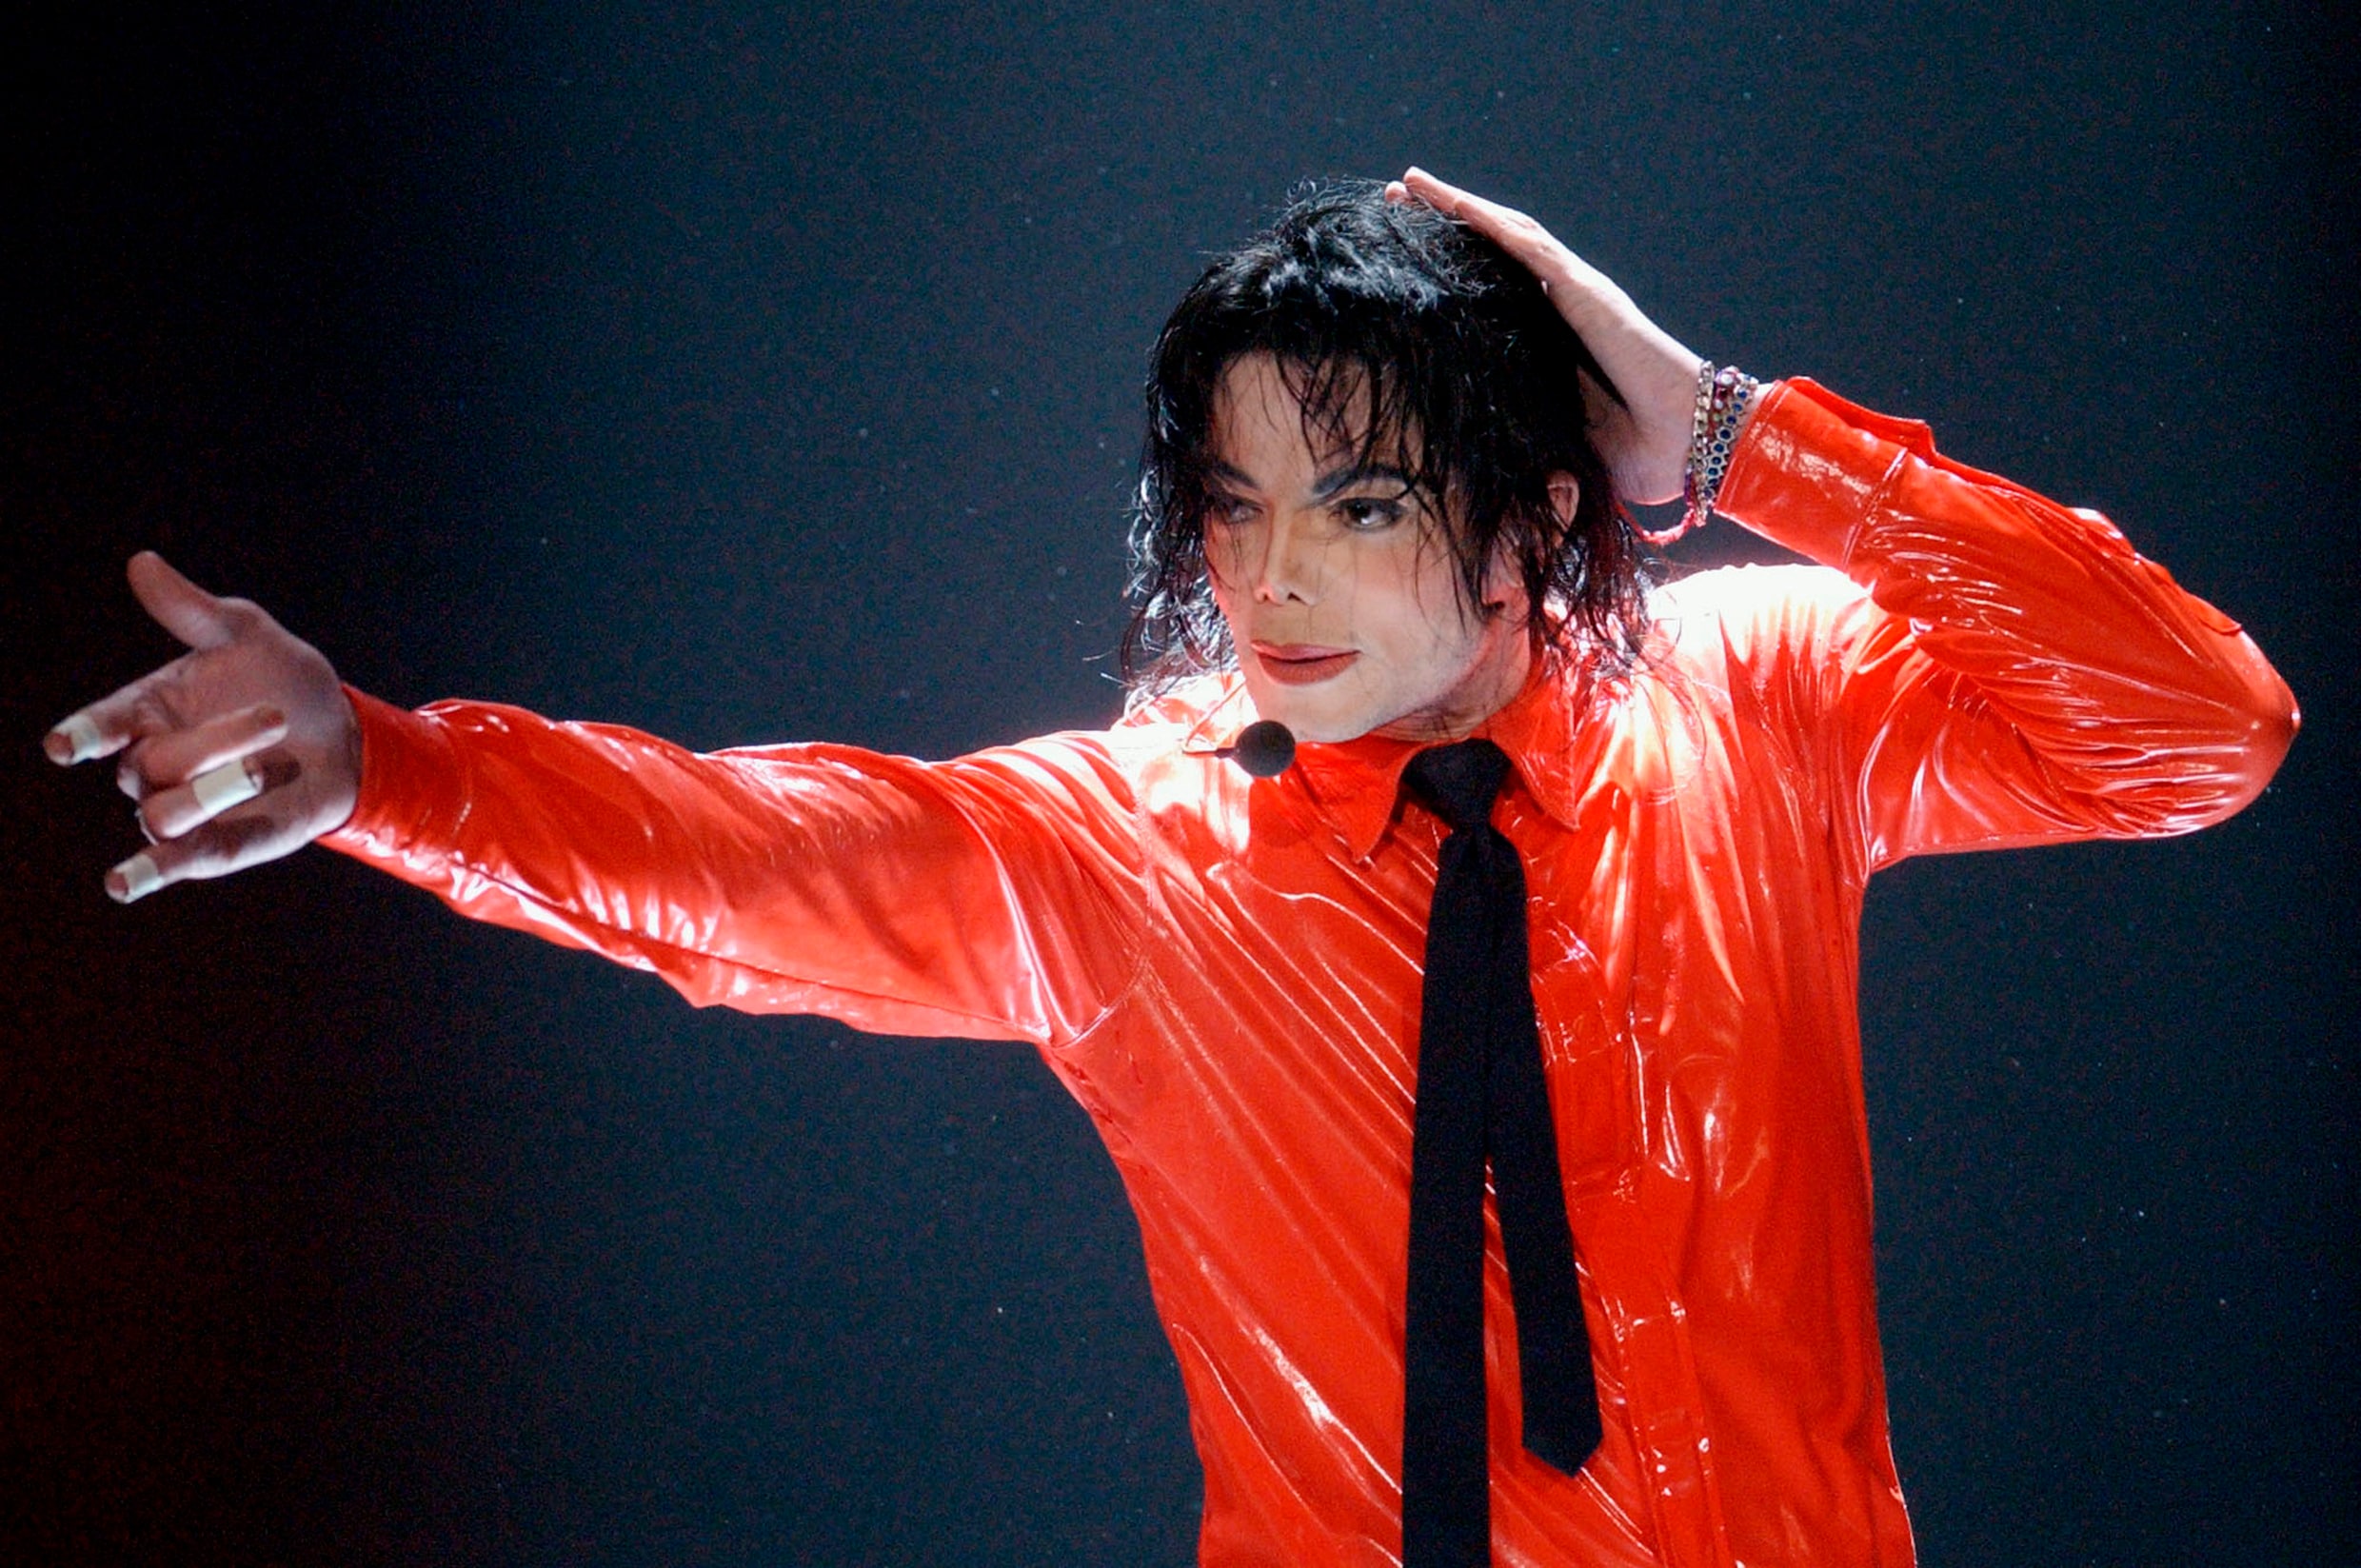 Erfgenamen Michael Jackson eisen dat StuBru-programma van naam verandert